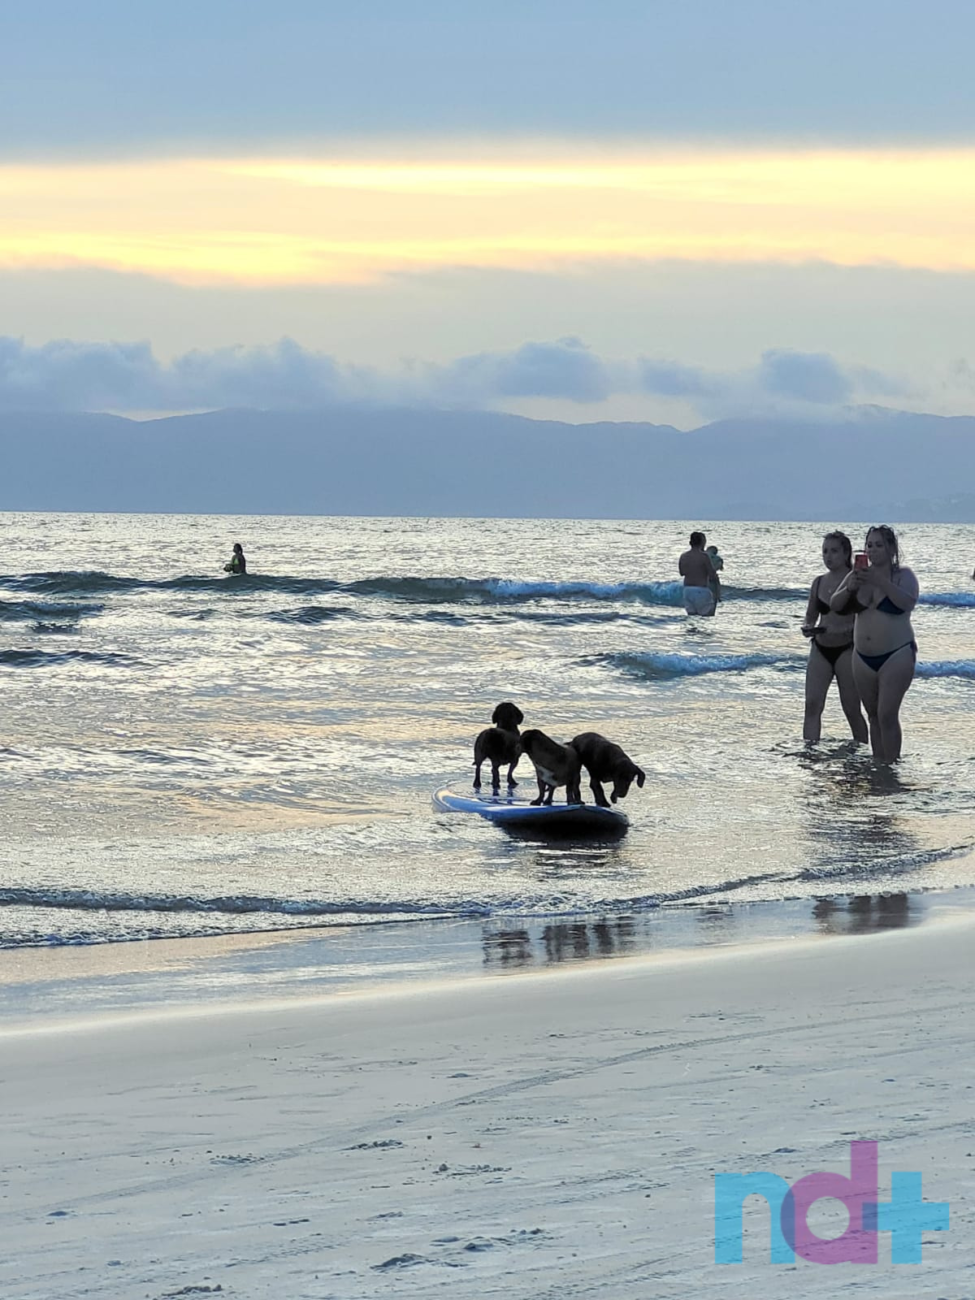 FOTOS: Surfe animal surpreende banhistas em praia de Santa Catarina | ND  Mais